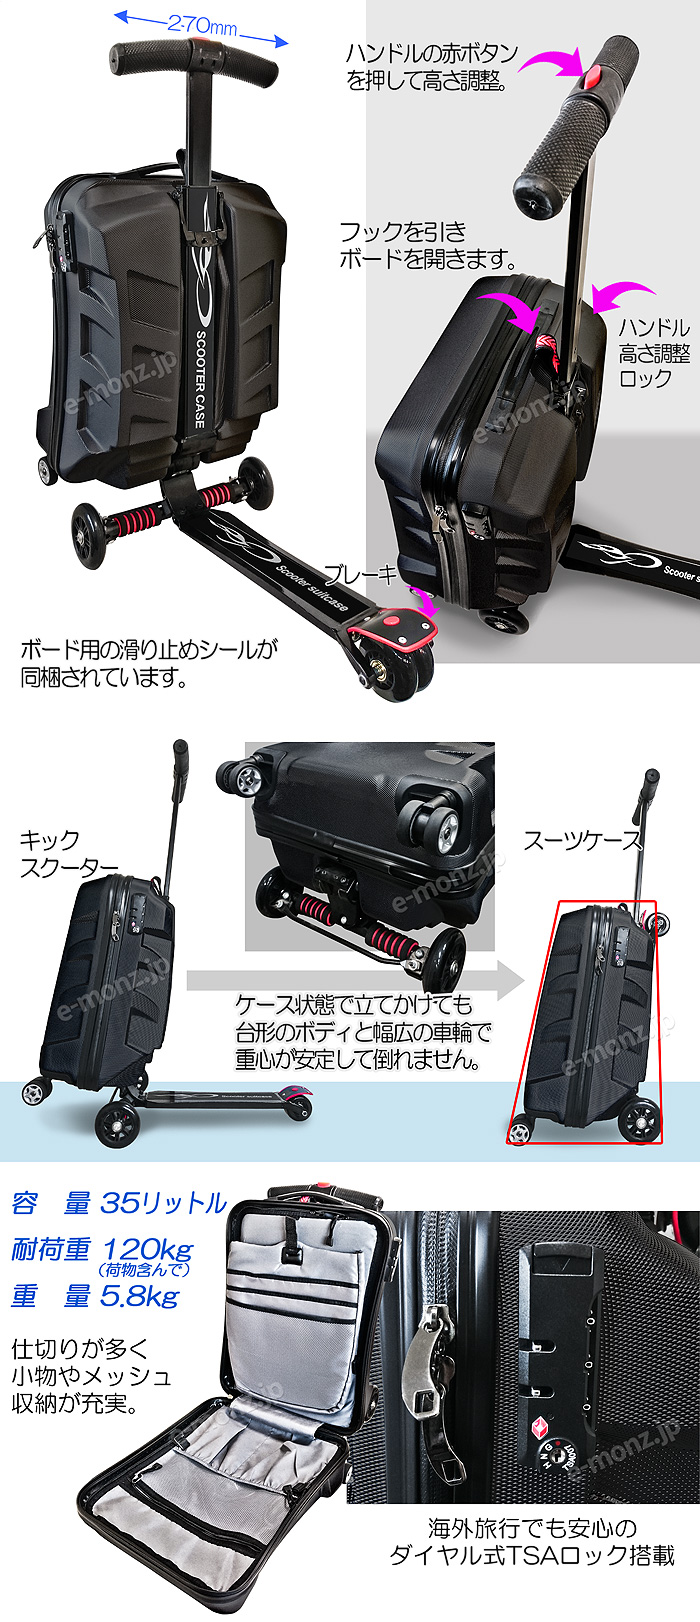 スーツケースがスクーターに変身するチェンジ スケーター【SUITCASE SCOOTER】ブラック